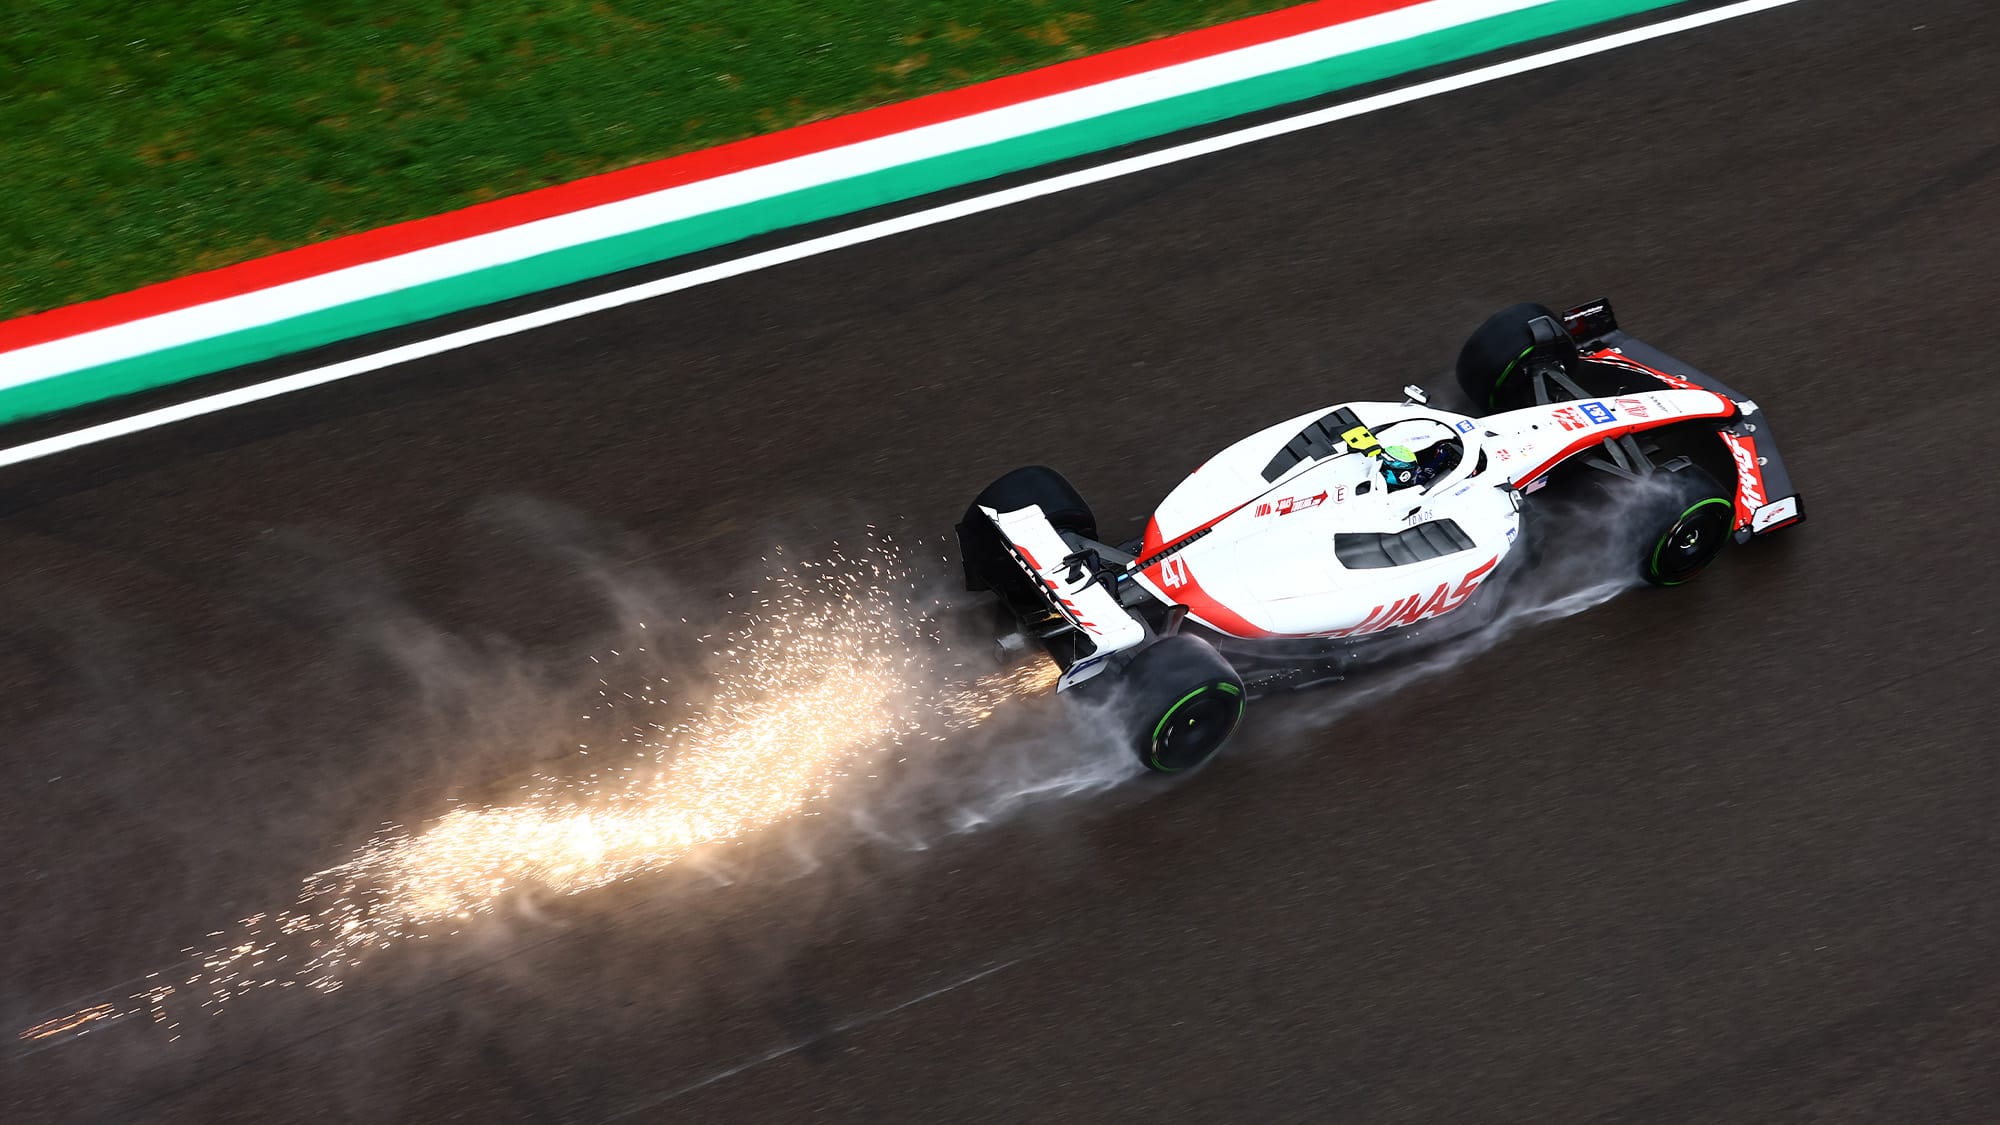 Ferrari power proves mighty in Imola rain 2022 Emilia Romagna GP practice report